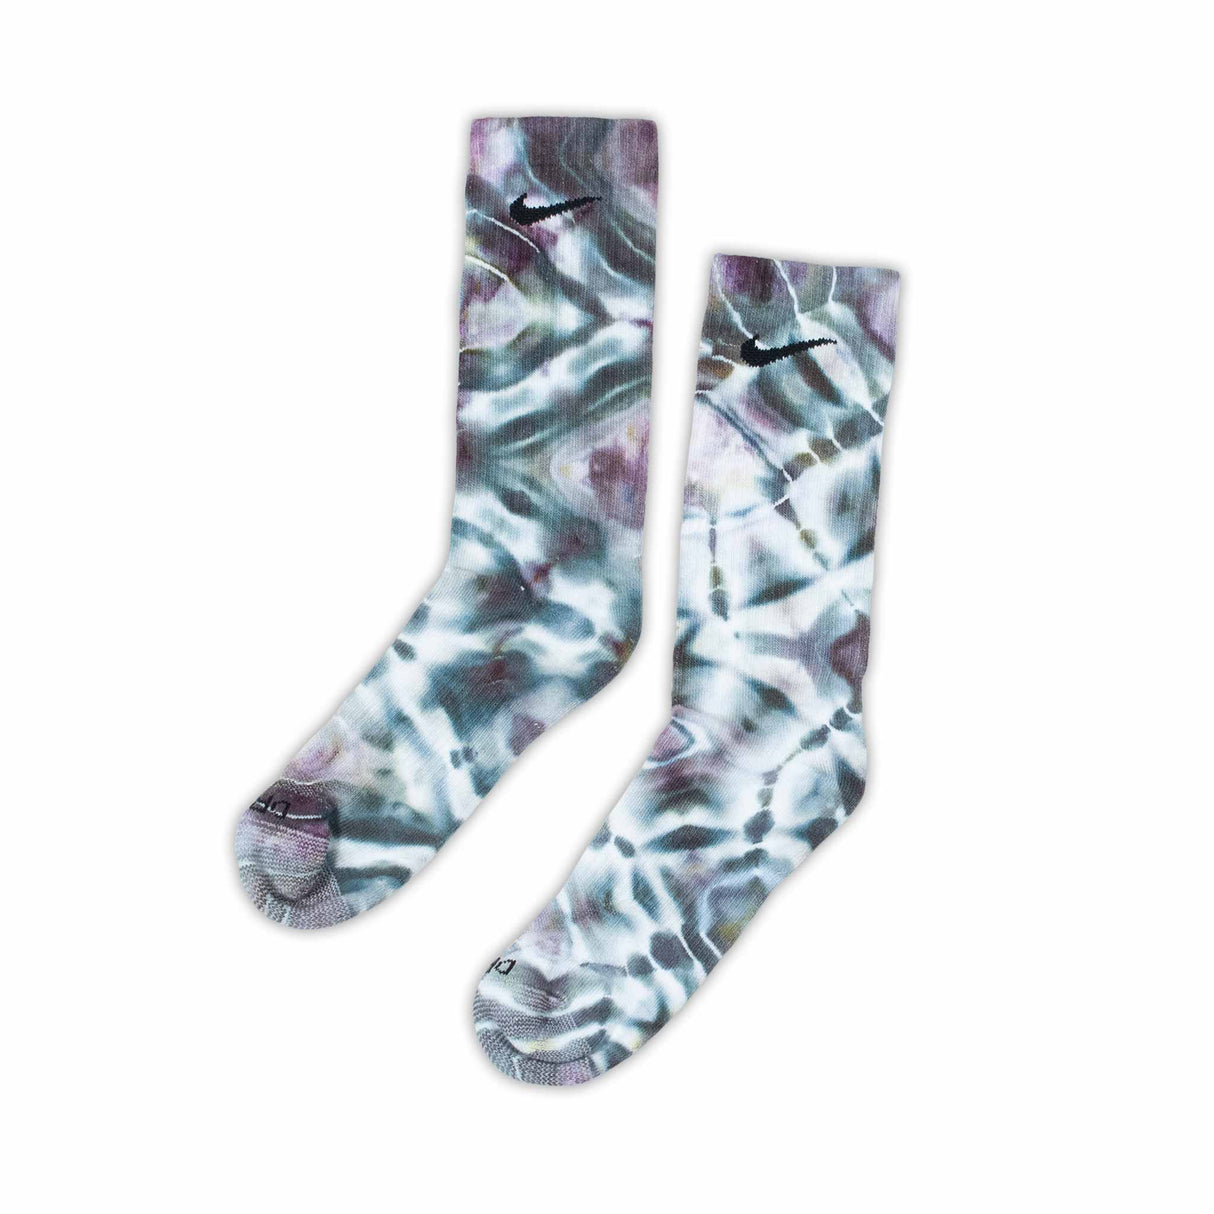 Galactic Swirl Shibori Ice Dye Socks Medium